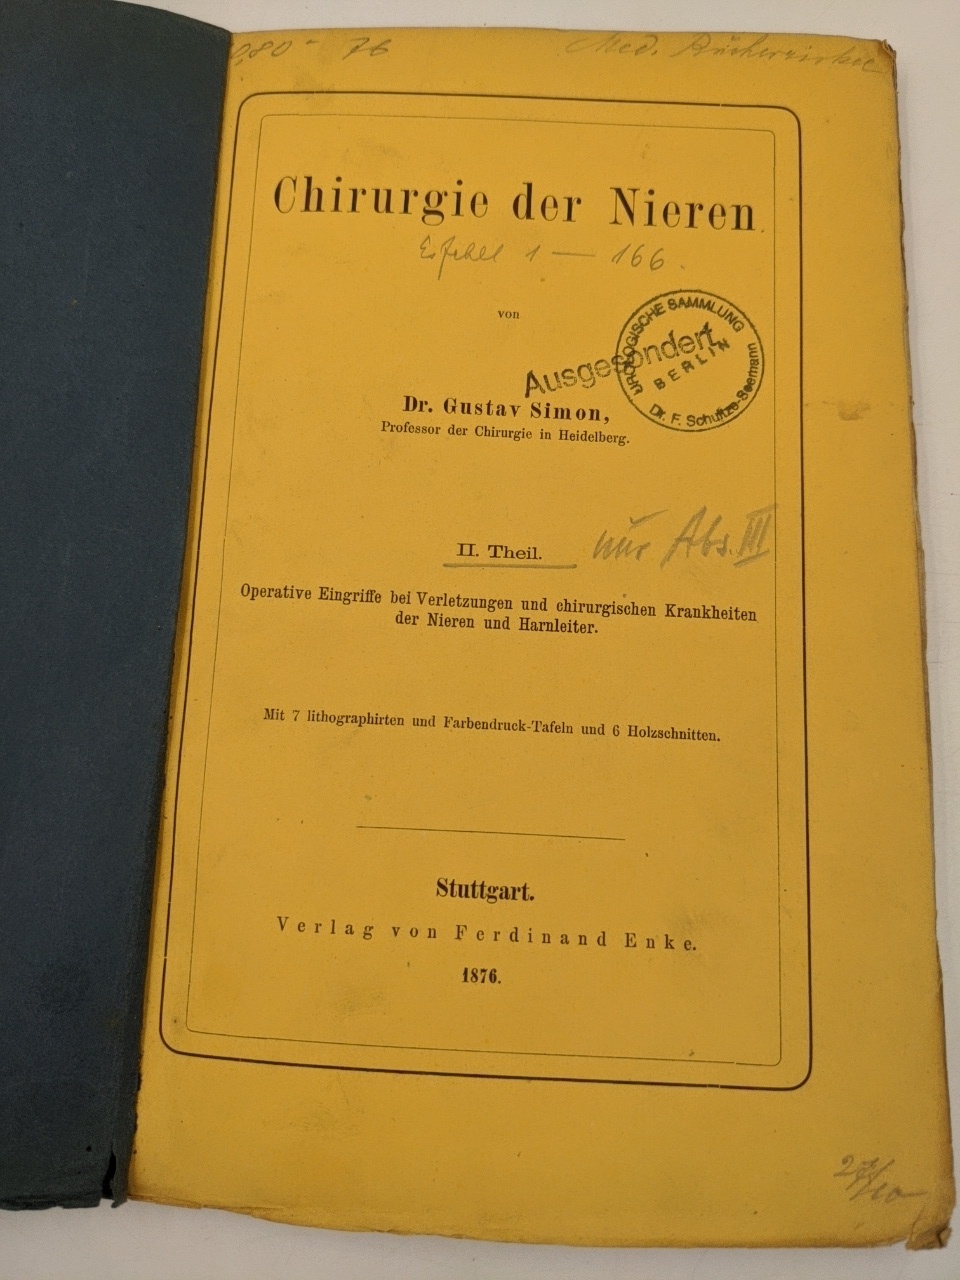 Simon, Gustav:  Suppurative Entzündungen in der Niere und dem Nierenbecken. (=Chirurgie der Nieren, II. Theil, Absatz III.). 